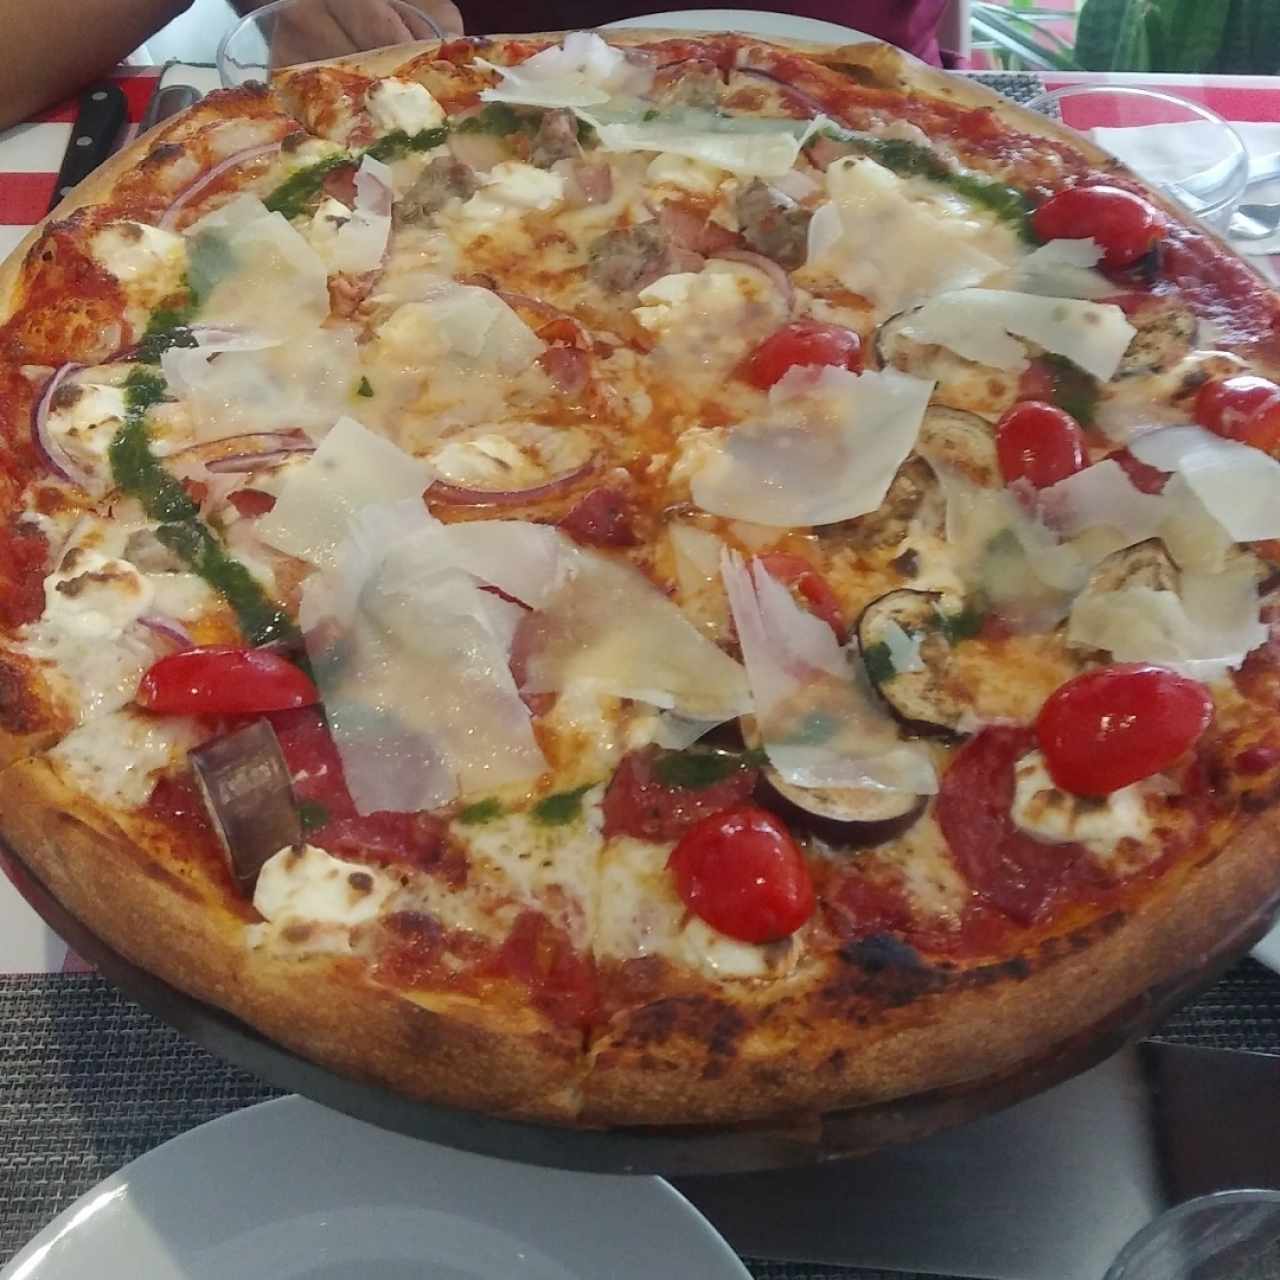 Pizza familiar mitad Focaccia Deliziosa, mitad Pizzicosa.